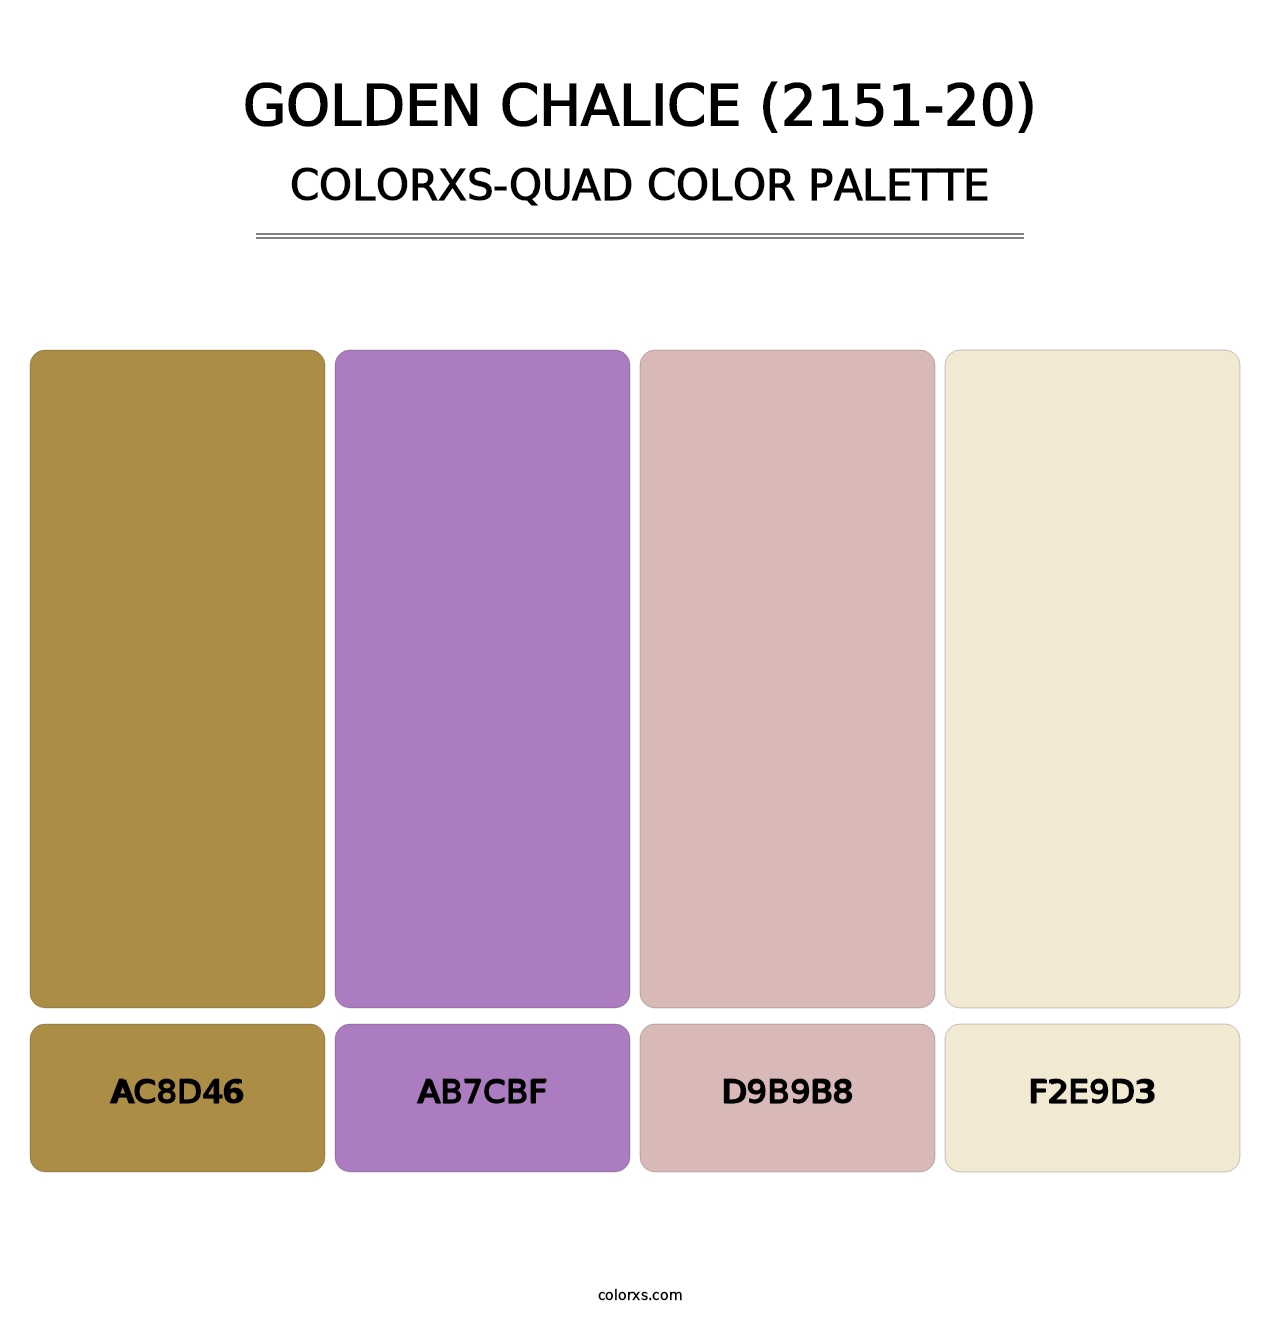 Golden Chalice (2151-20) - Colorxs Quad Palette